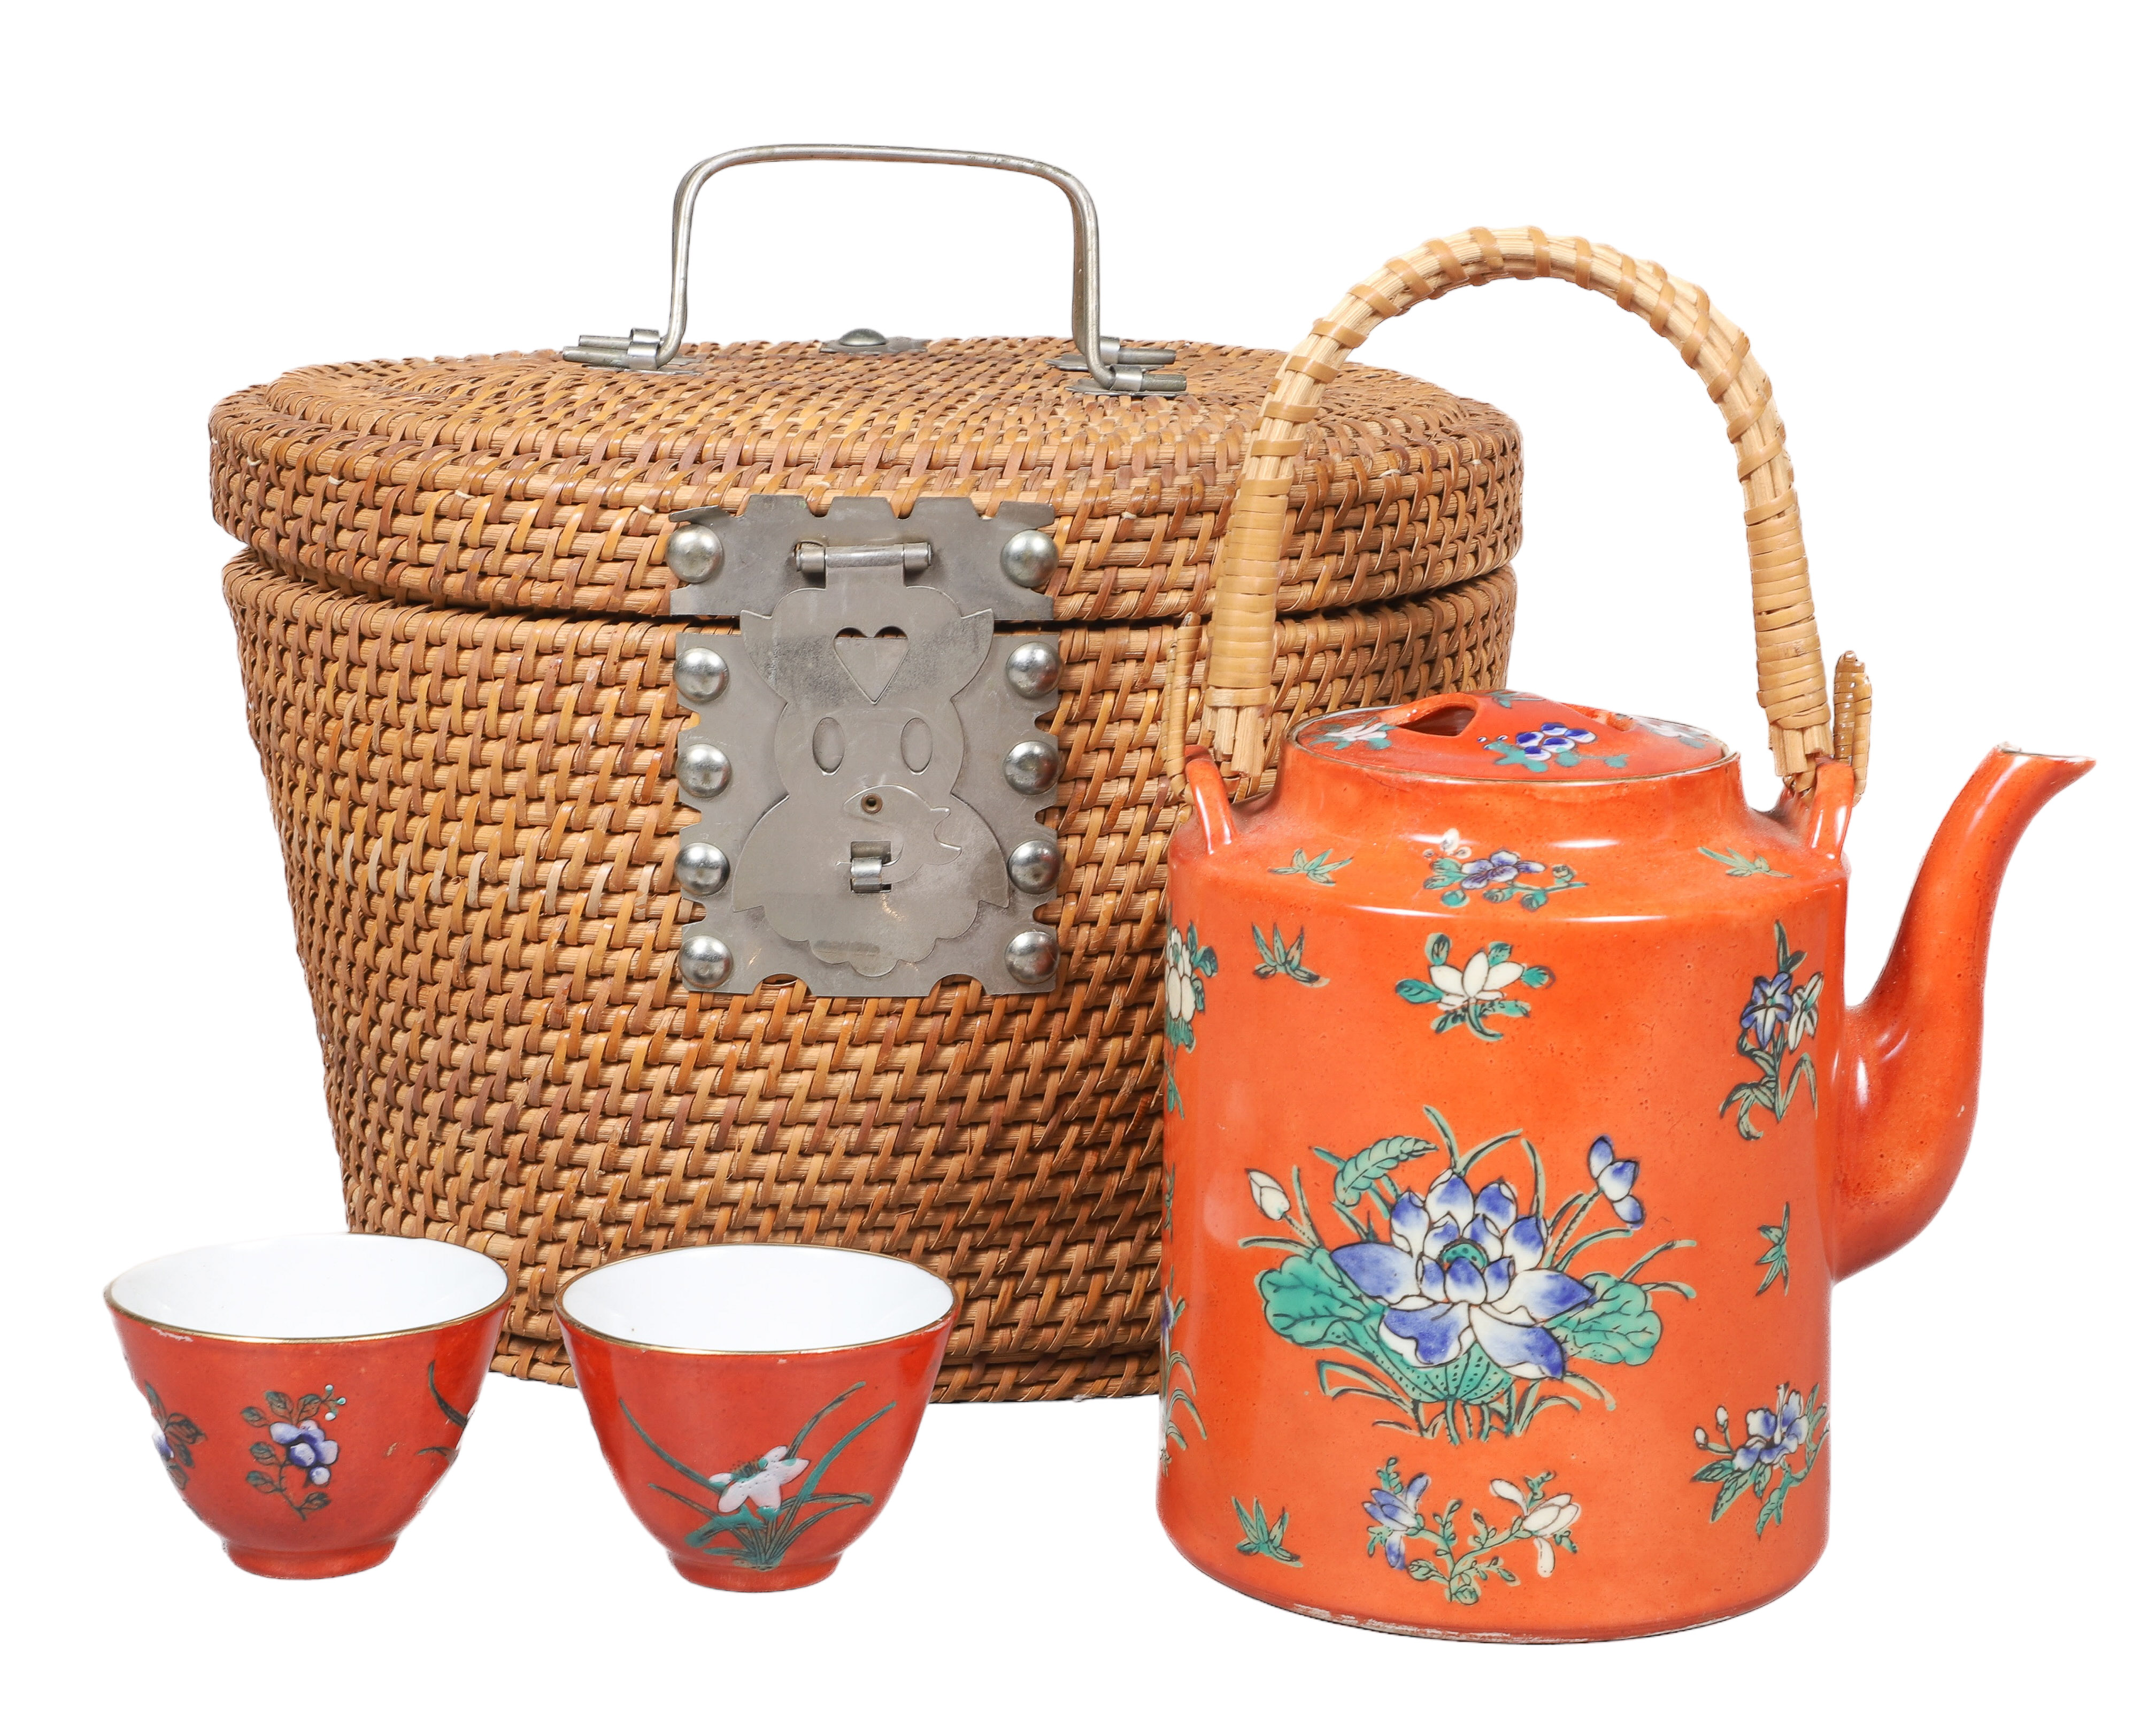 Chinese tea basket woven basket 2e1b4e